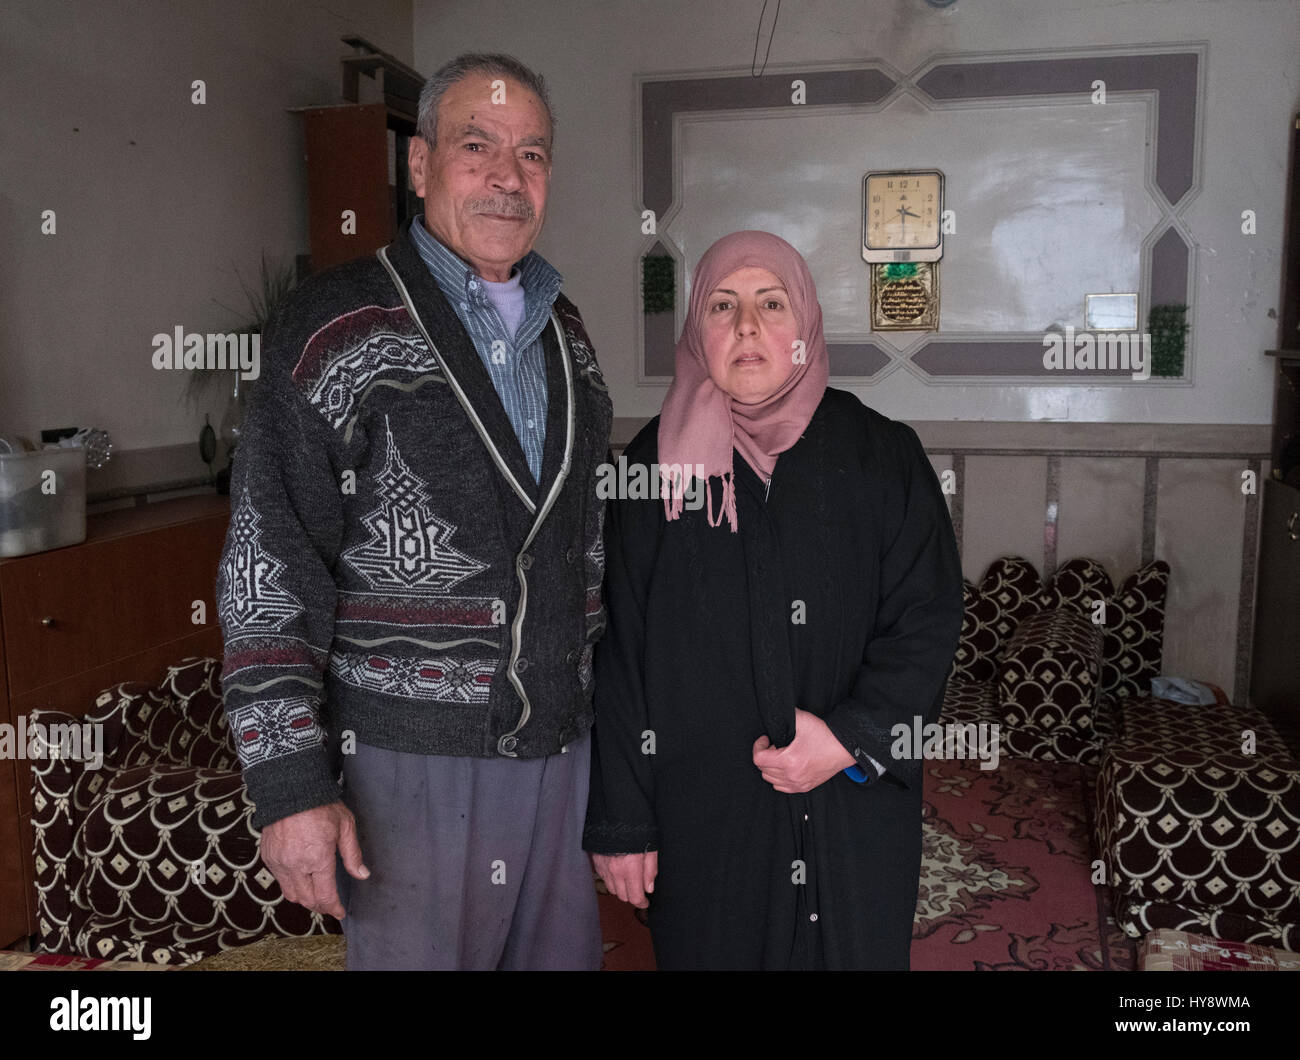 La Syrie, Homs, entrevue avec Maha Abdulrahman et son mari Barre Ishadi Elali, vivant encore dans le quartier détruit Baba Amr Banque D'Images